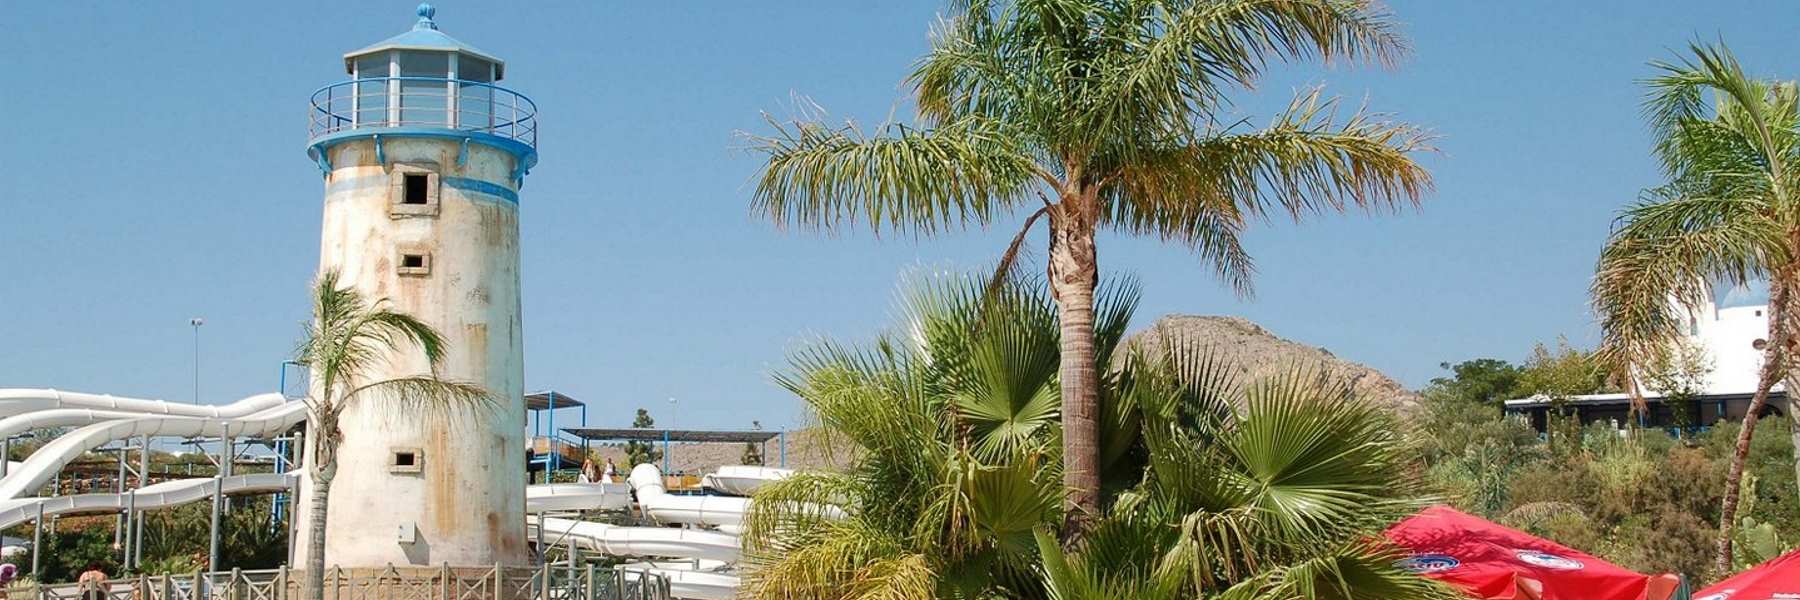 Oferta hotel con toboganes y parque temático en Benidorm para verano 2023